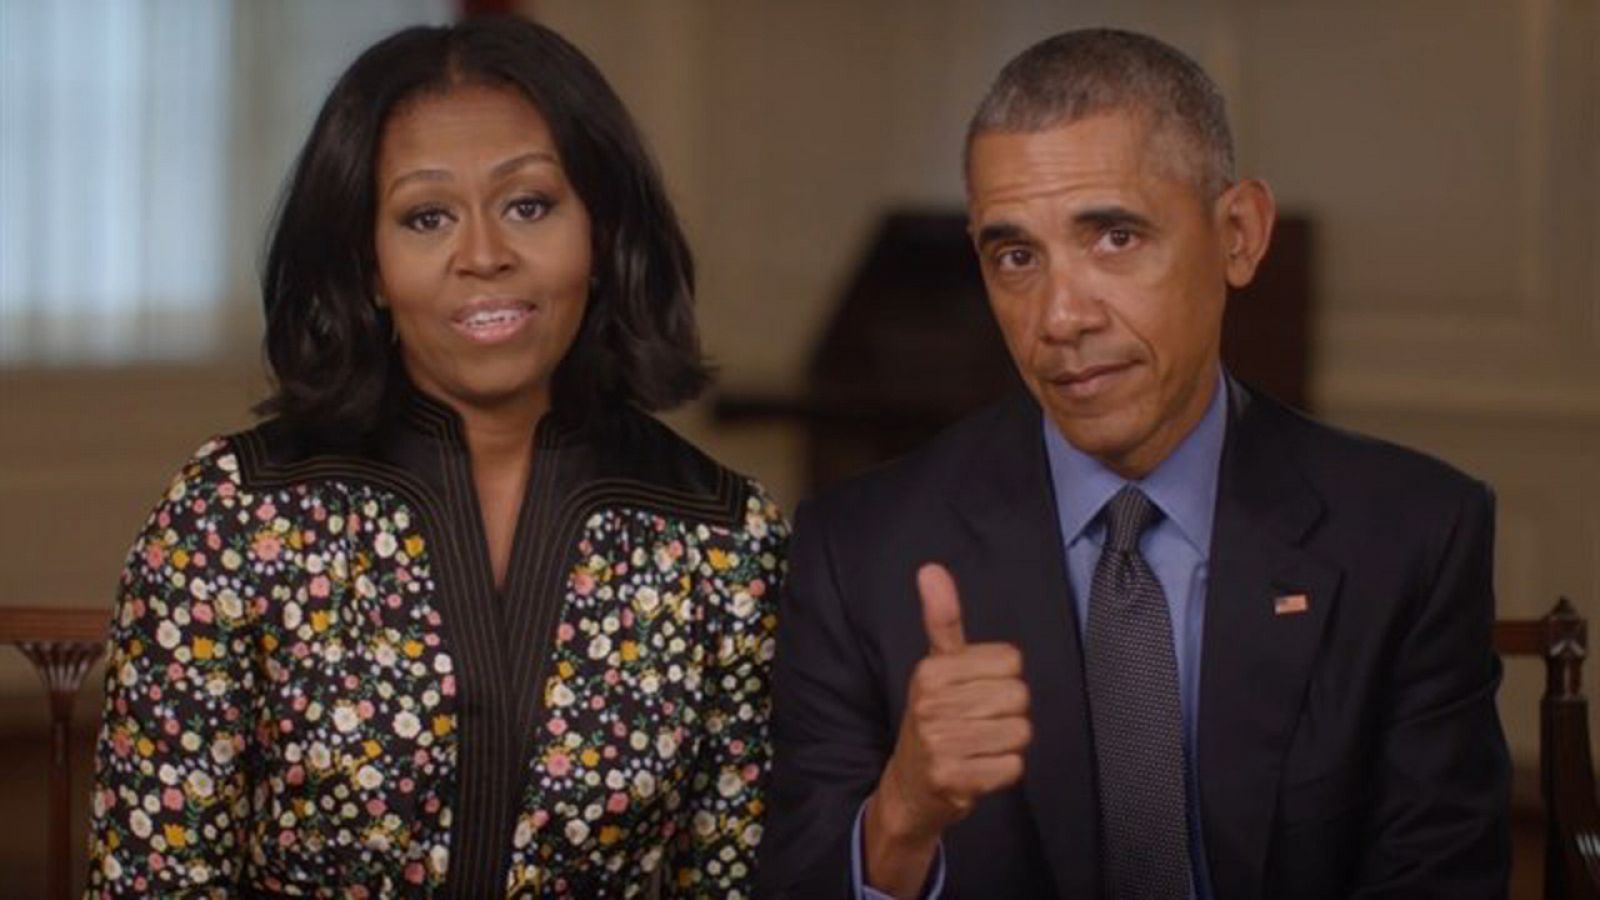 El presidente saliente Barack Obama y su esposa Michelle